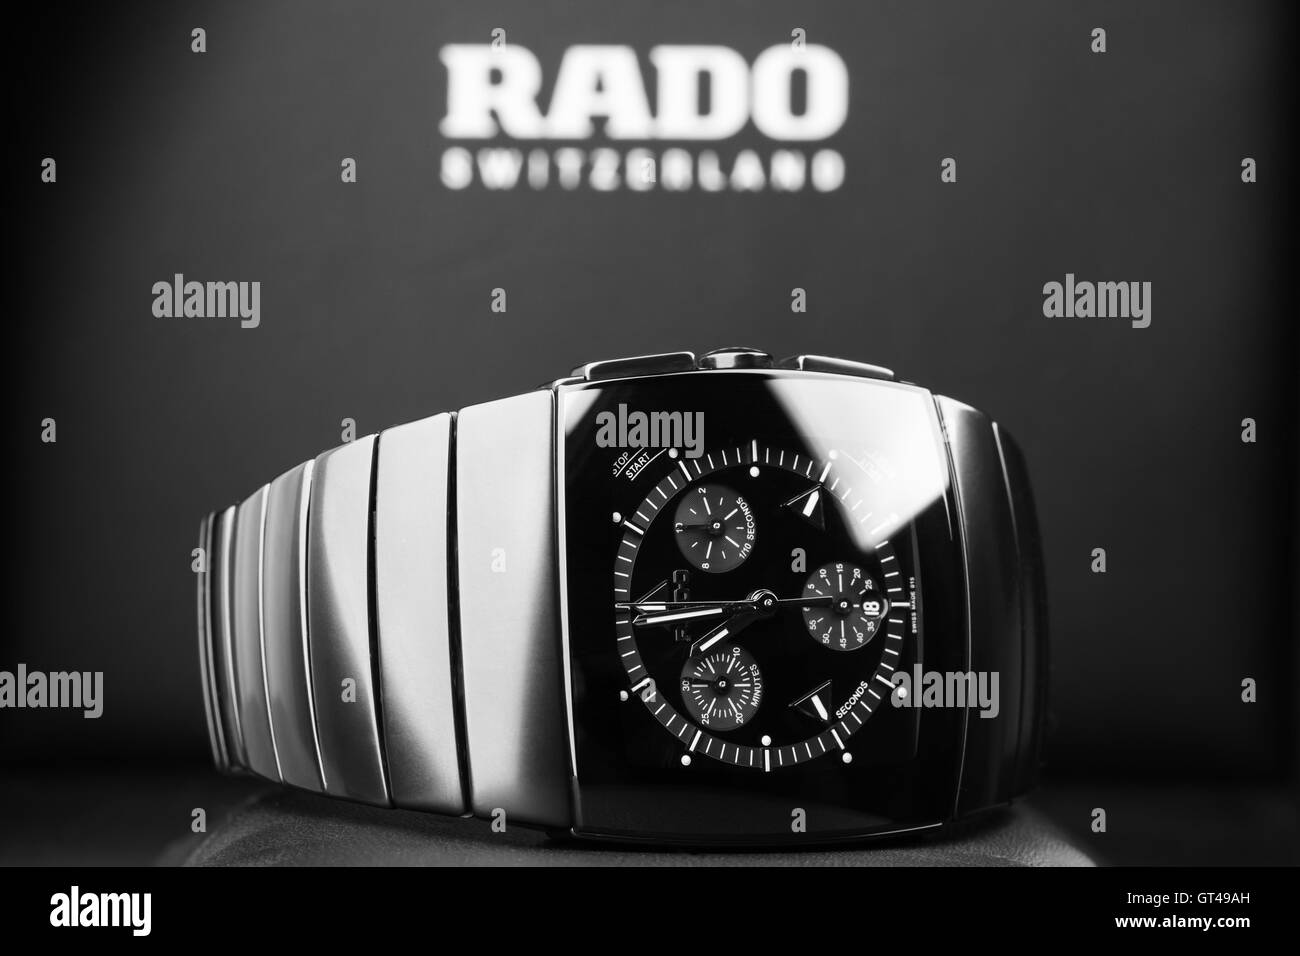 Saint-pétersbourg, Russie - le 18 juin 2015 : Rado Sintra Chrono Montre chronographe pour hommes, fait de la céramique high-tech avec sapphire gl Banque D'Images